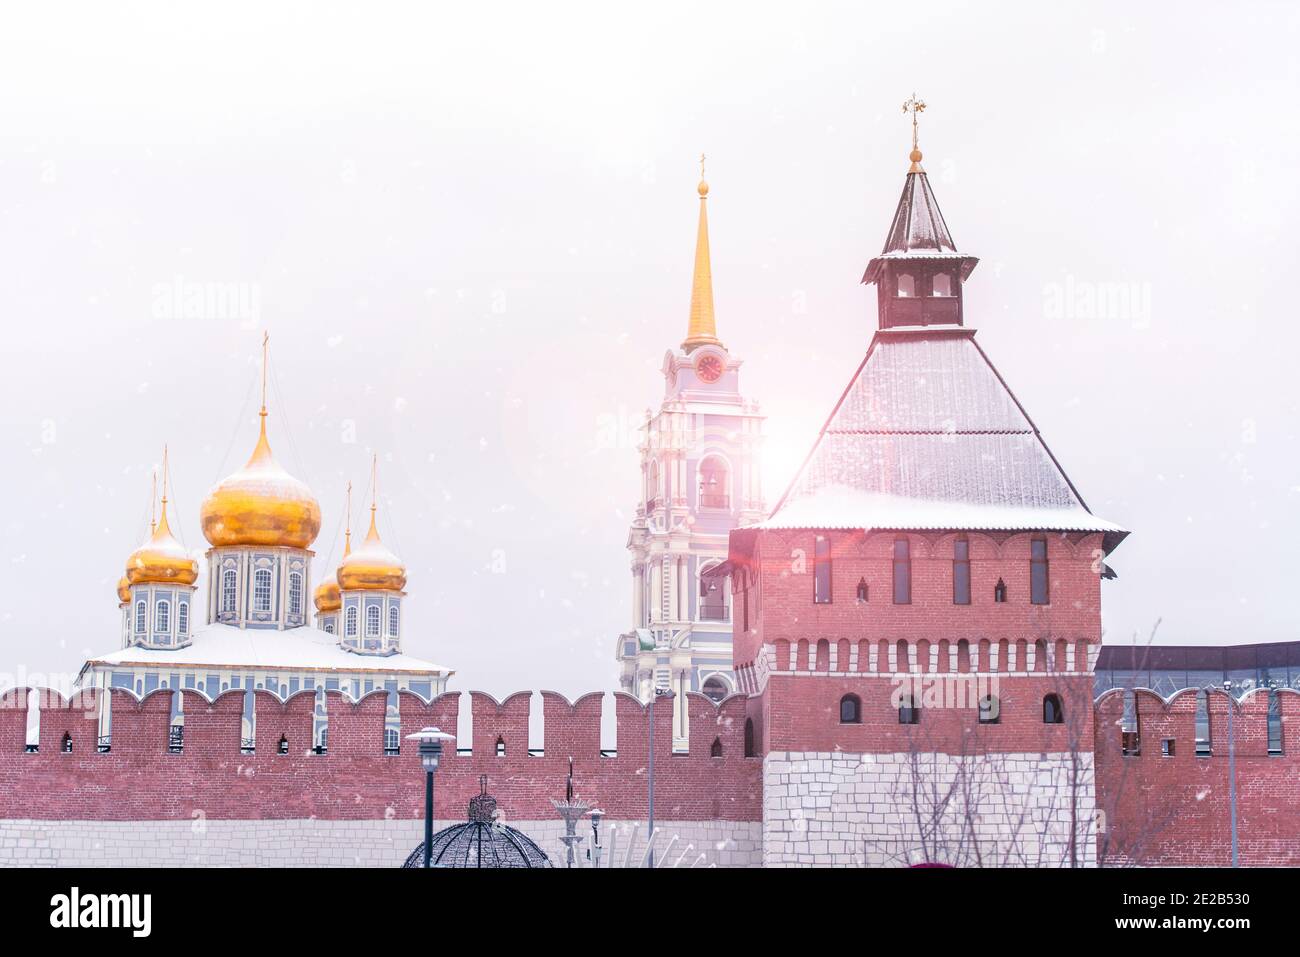 Le Kremlin de Tula en Russie, vue panoramique d'hiver sur le kremlin de Tula avec mur de briques, tour et vieille église Banque D'Images